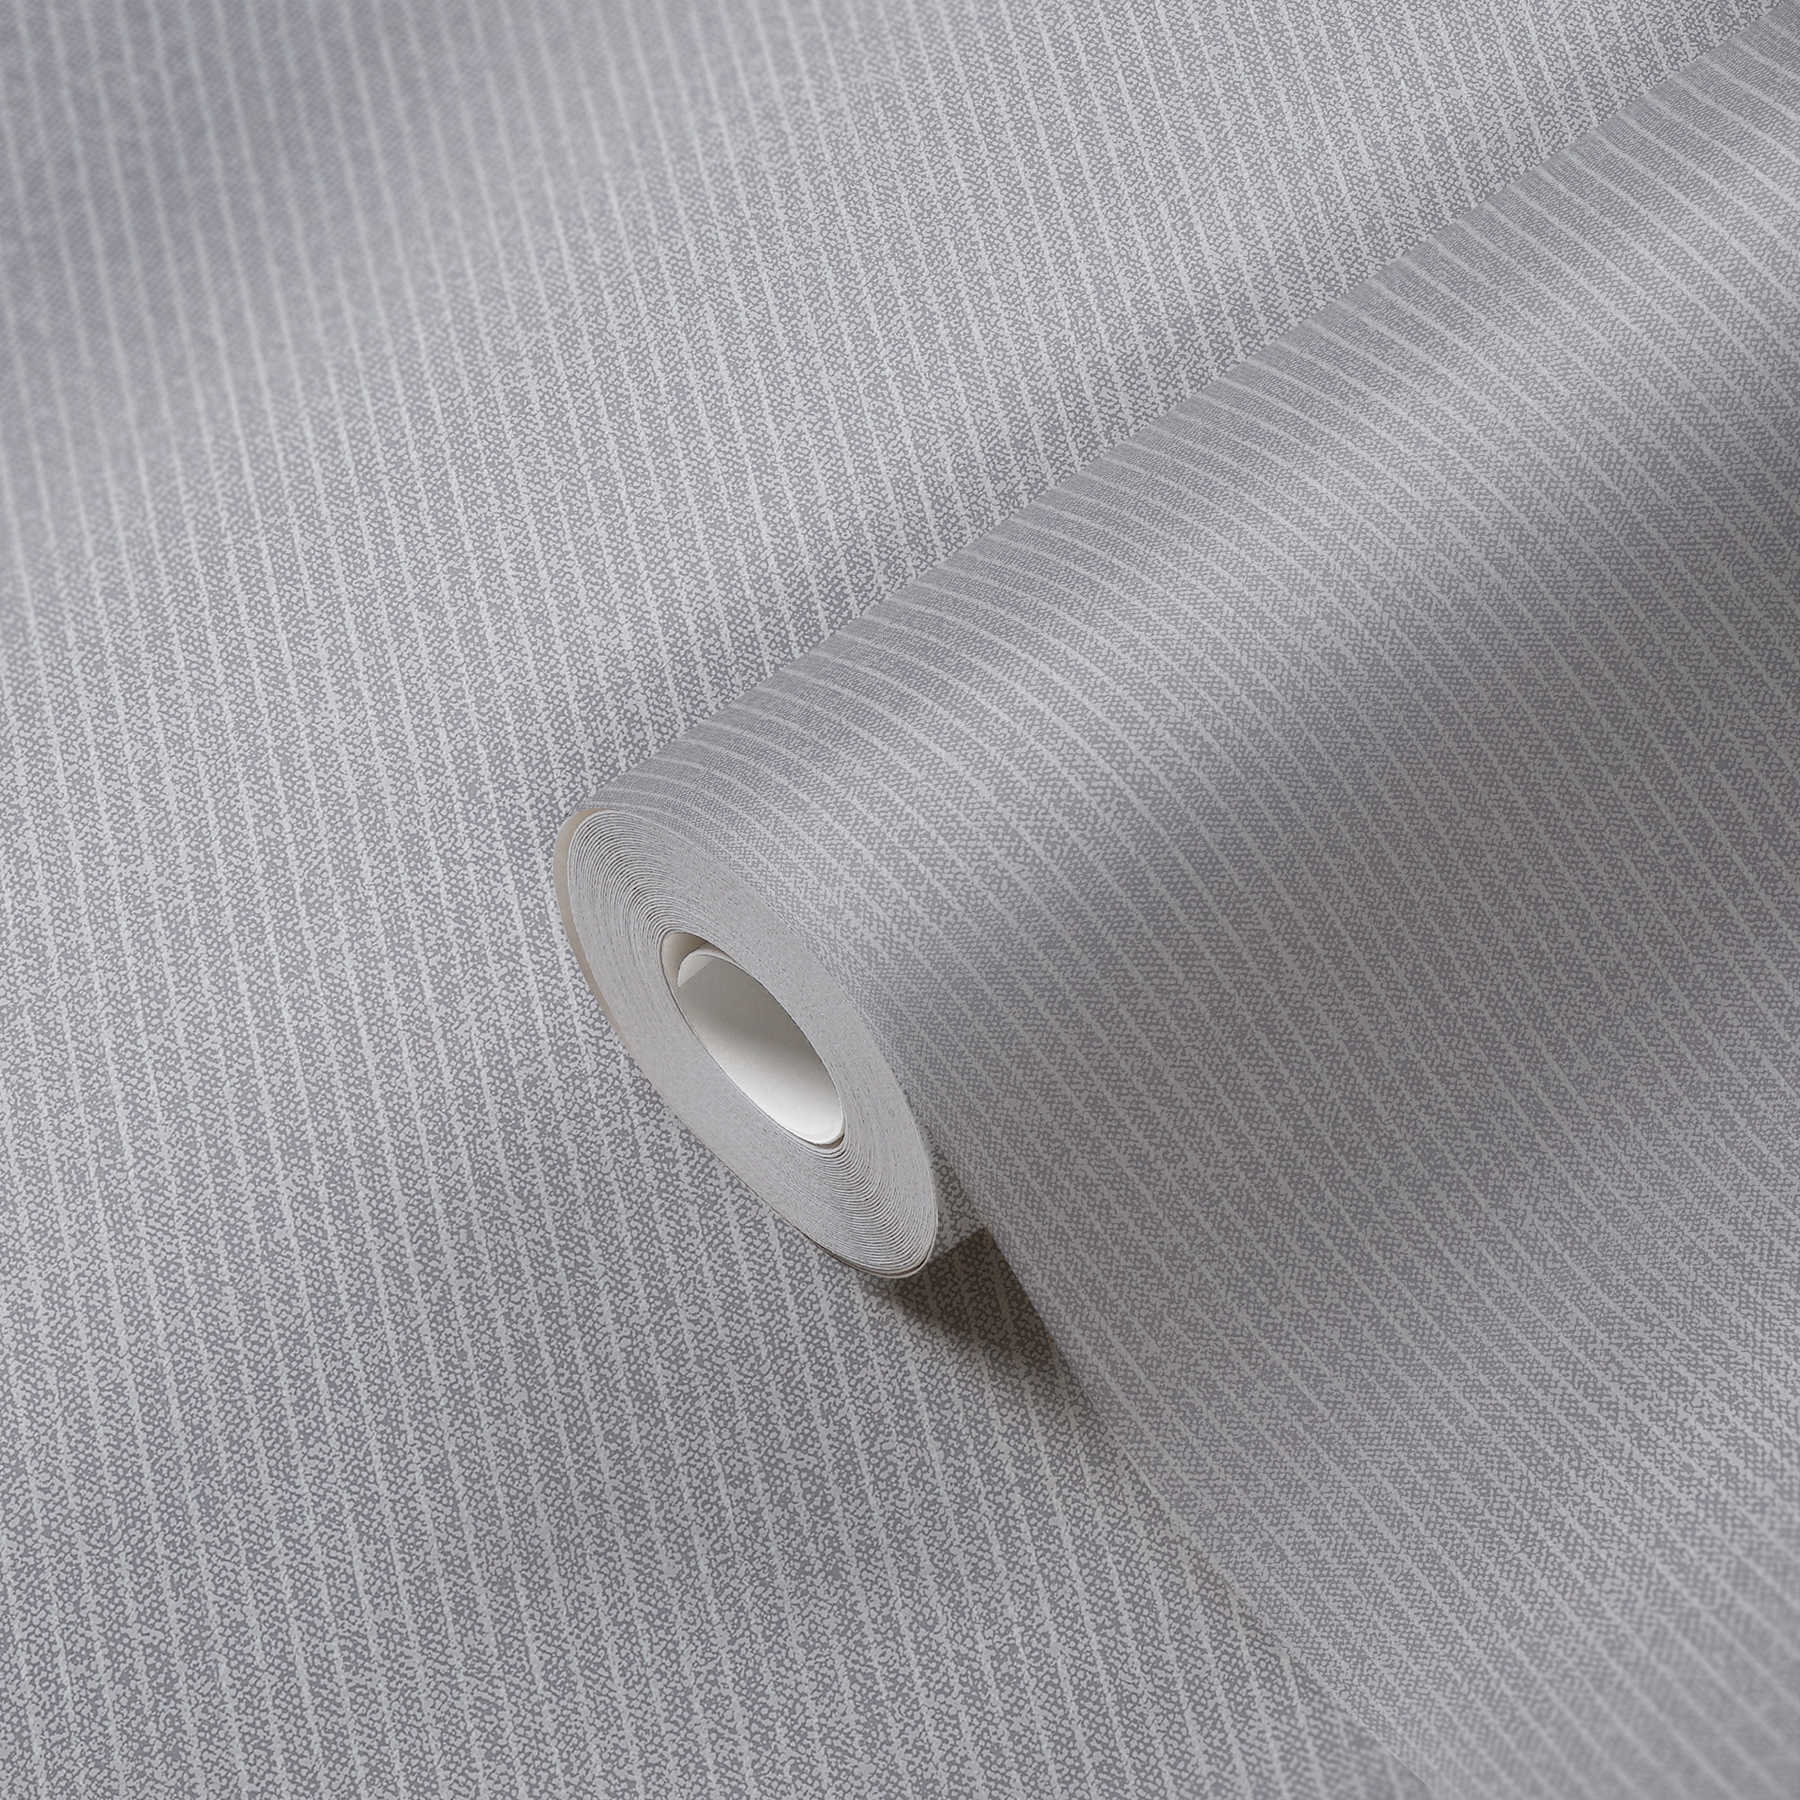             Gevoerd behangpapier smalle strepen in textiellook - grijs
        